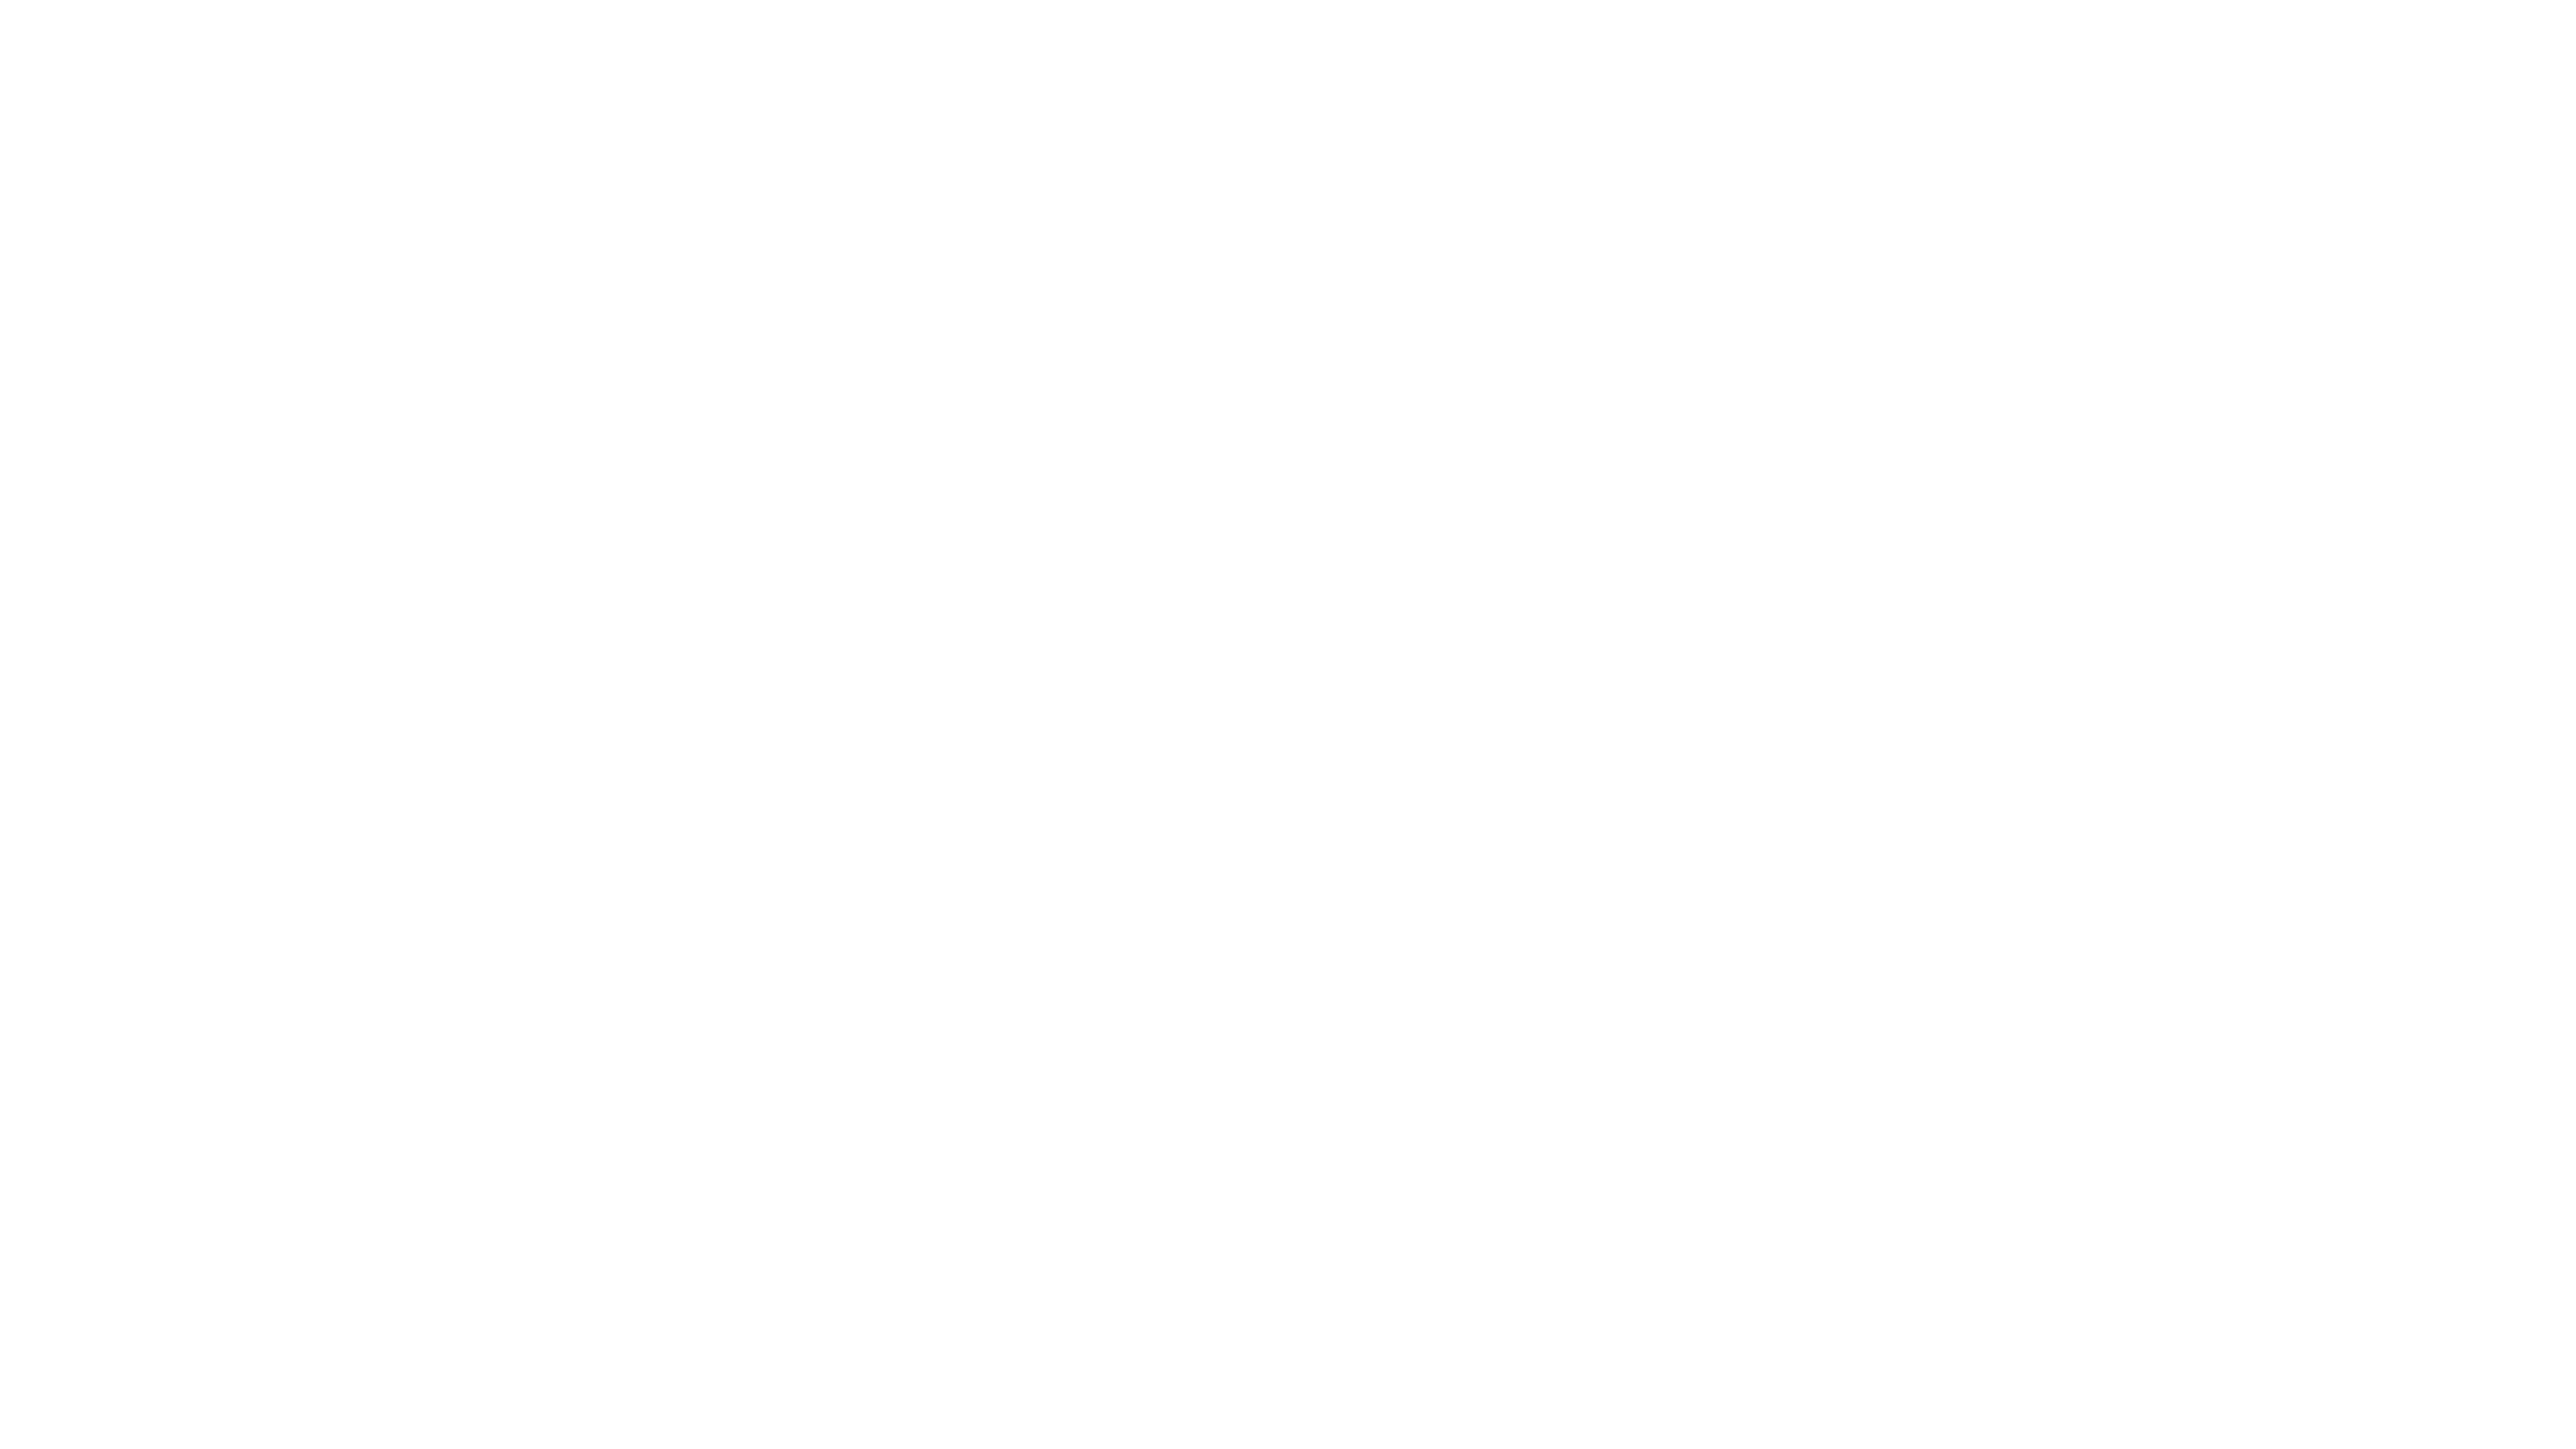 ROCK IM DORF Festival - 21. bis 23. Juli 2023 - Kirchdorf an der Krems